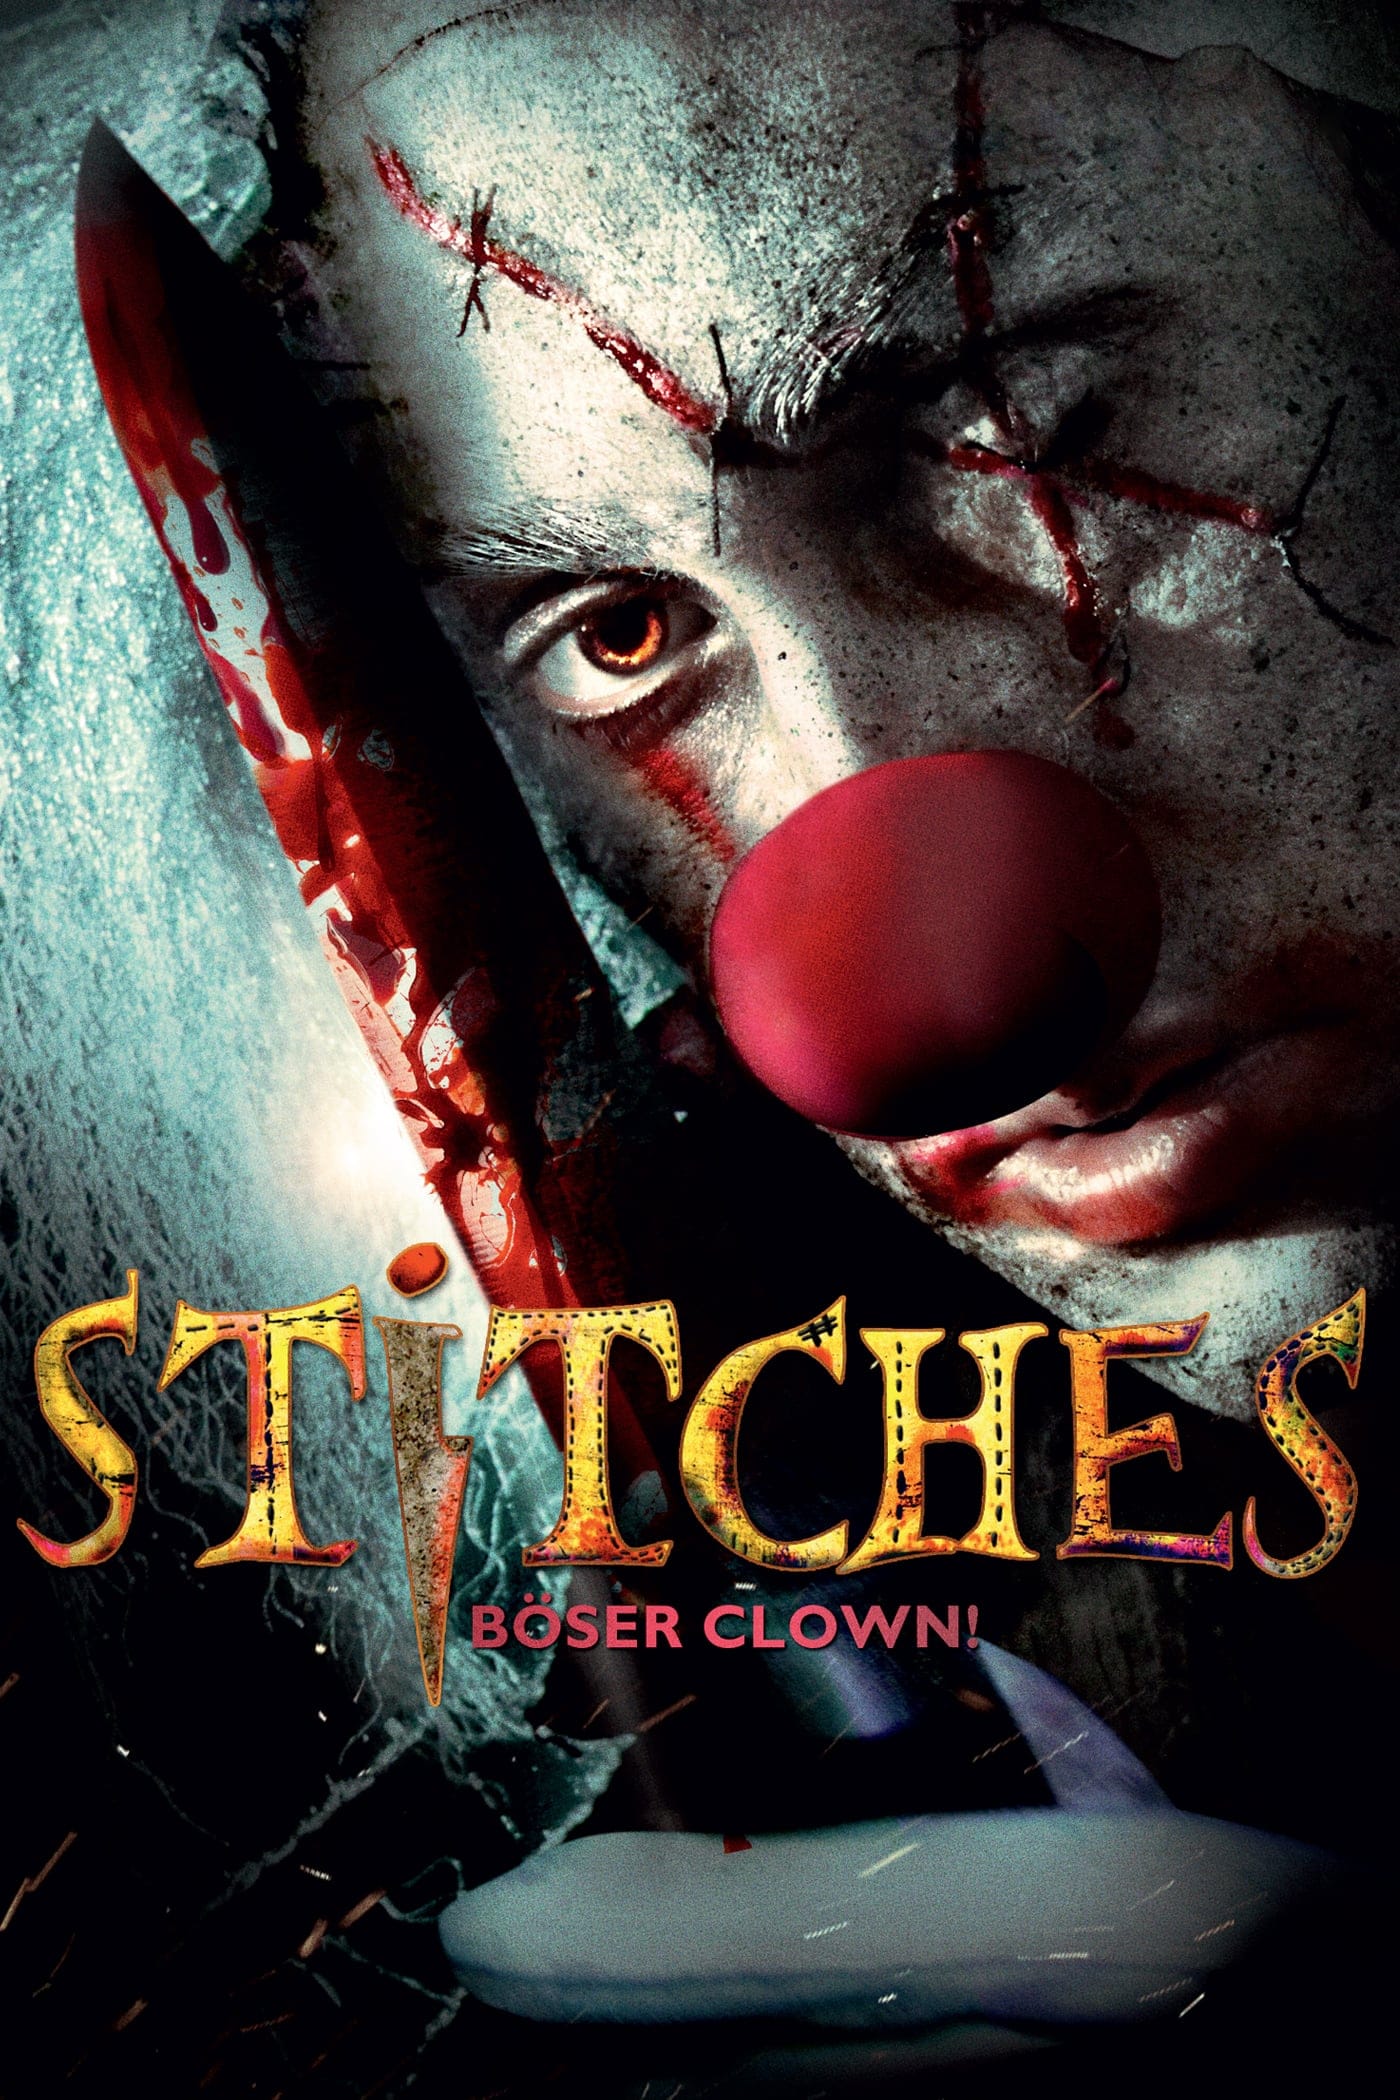 Plakat von "Stitches - Böser Clown"